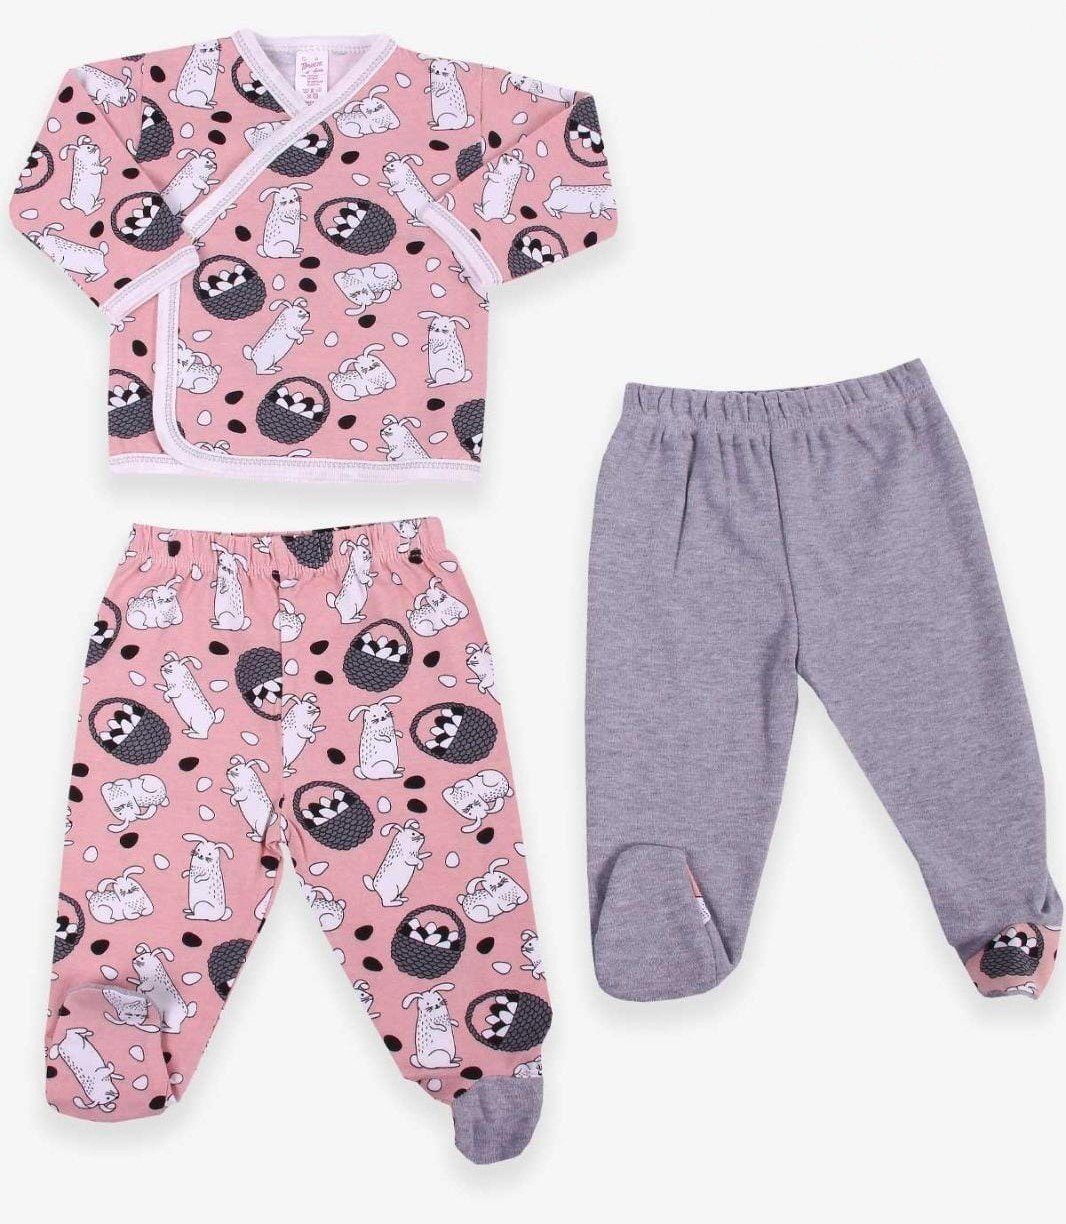 Breeze Neugeborenen-Geschenkset Baby 3er Sets (3er Set, Oberteil, Unterteile) 3Teiler niedliche Designs Print Design Pink